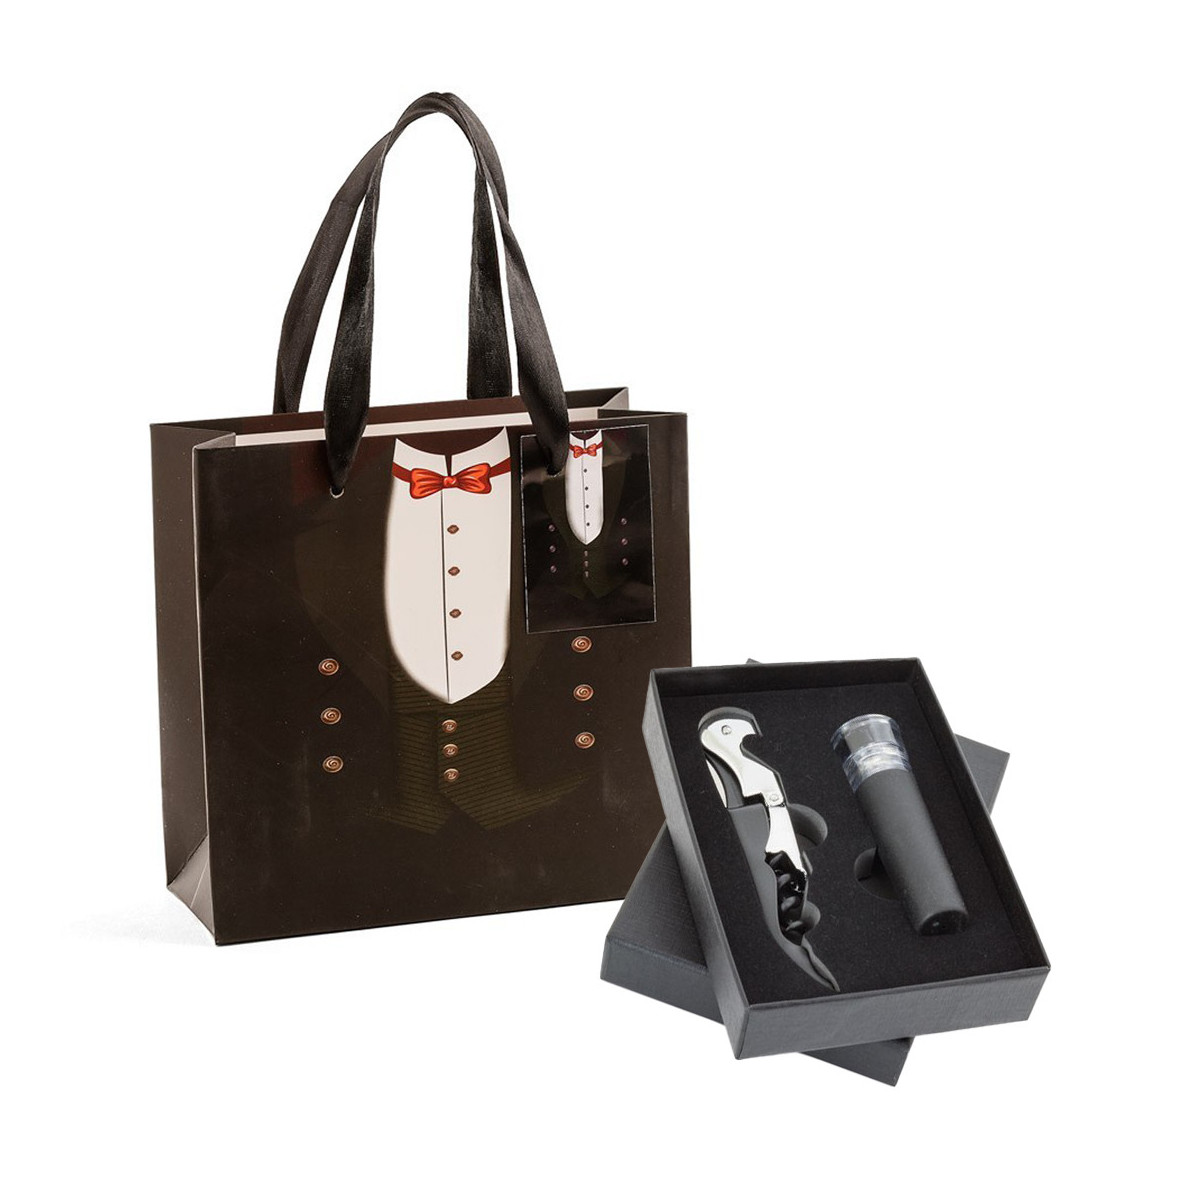 Tapón de vino con bomba de vacío y abrebotellas presentado en caja negra y bolsa de boda